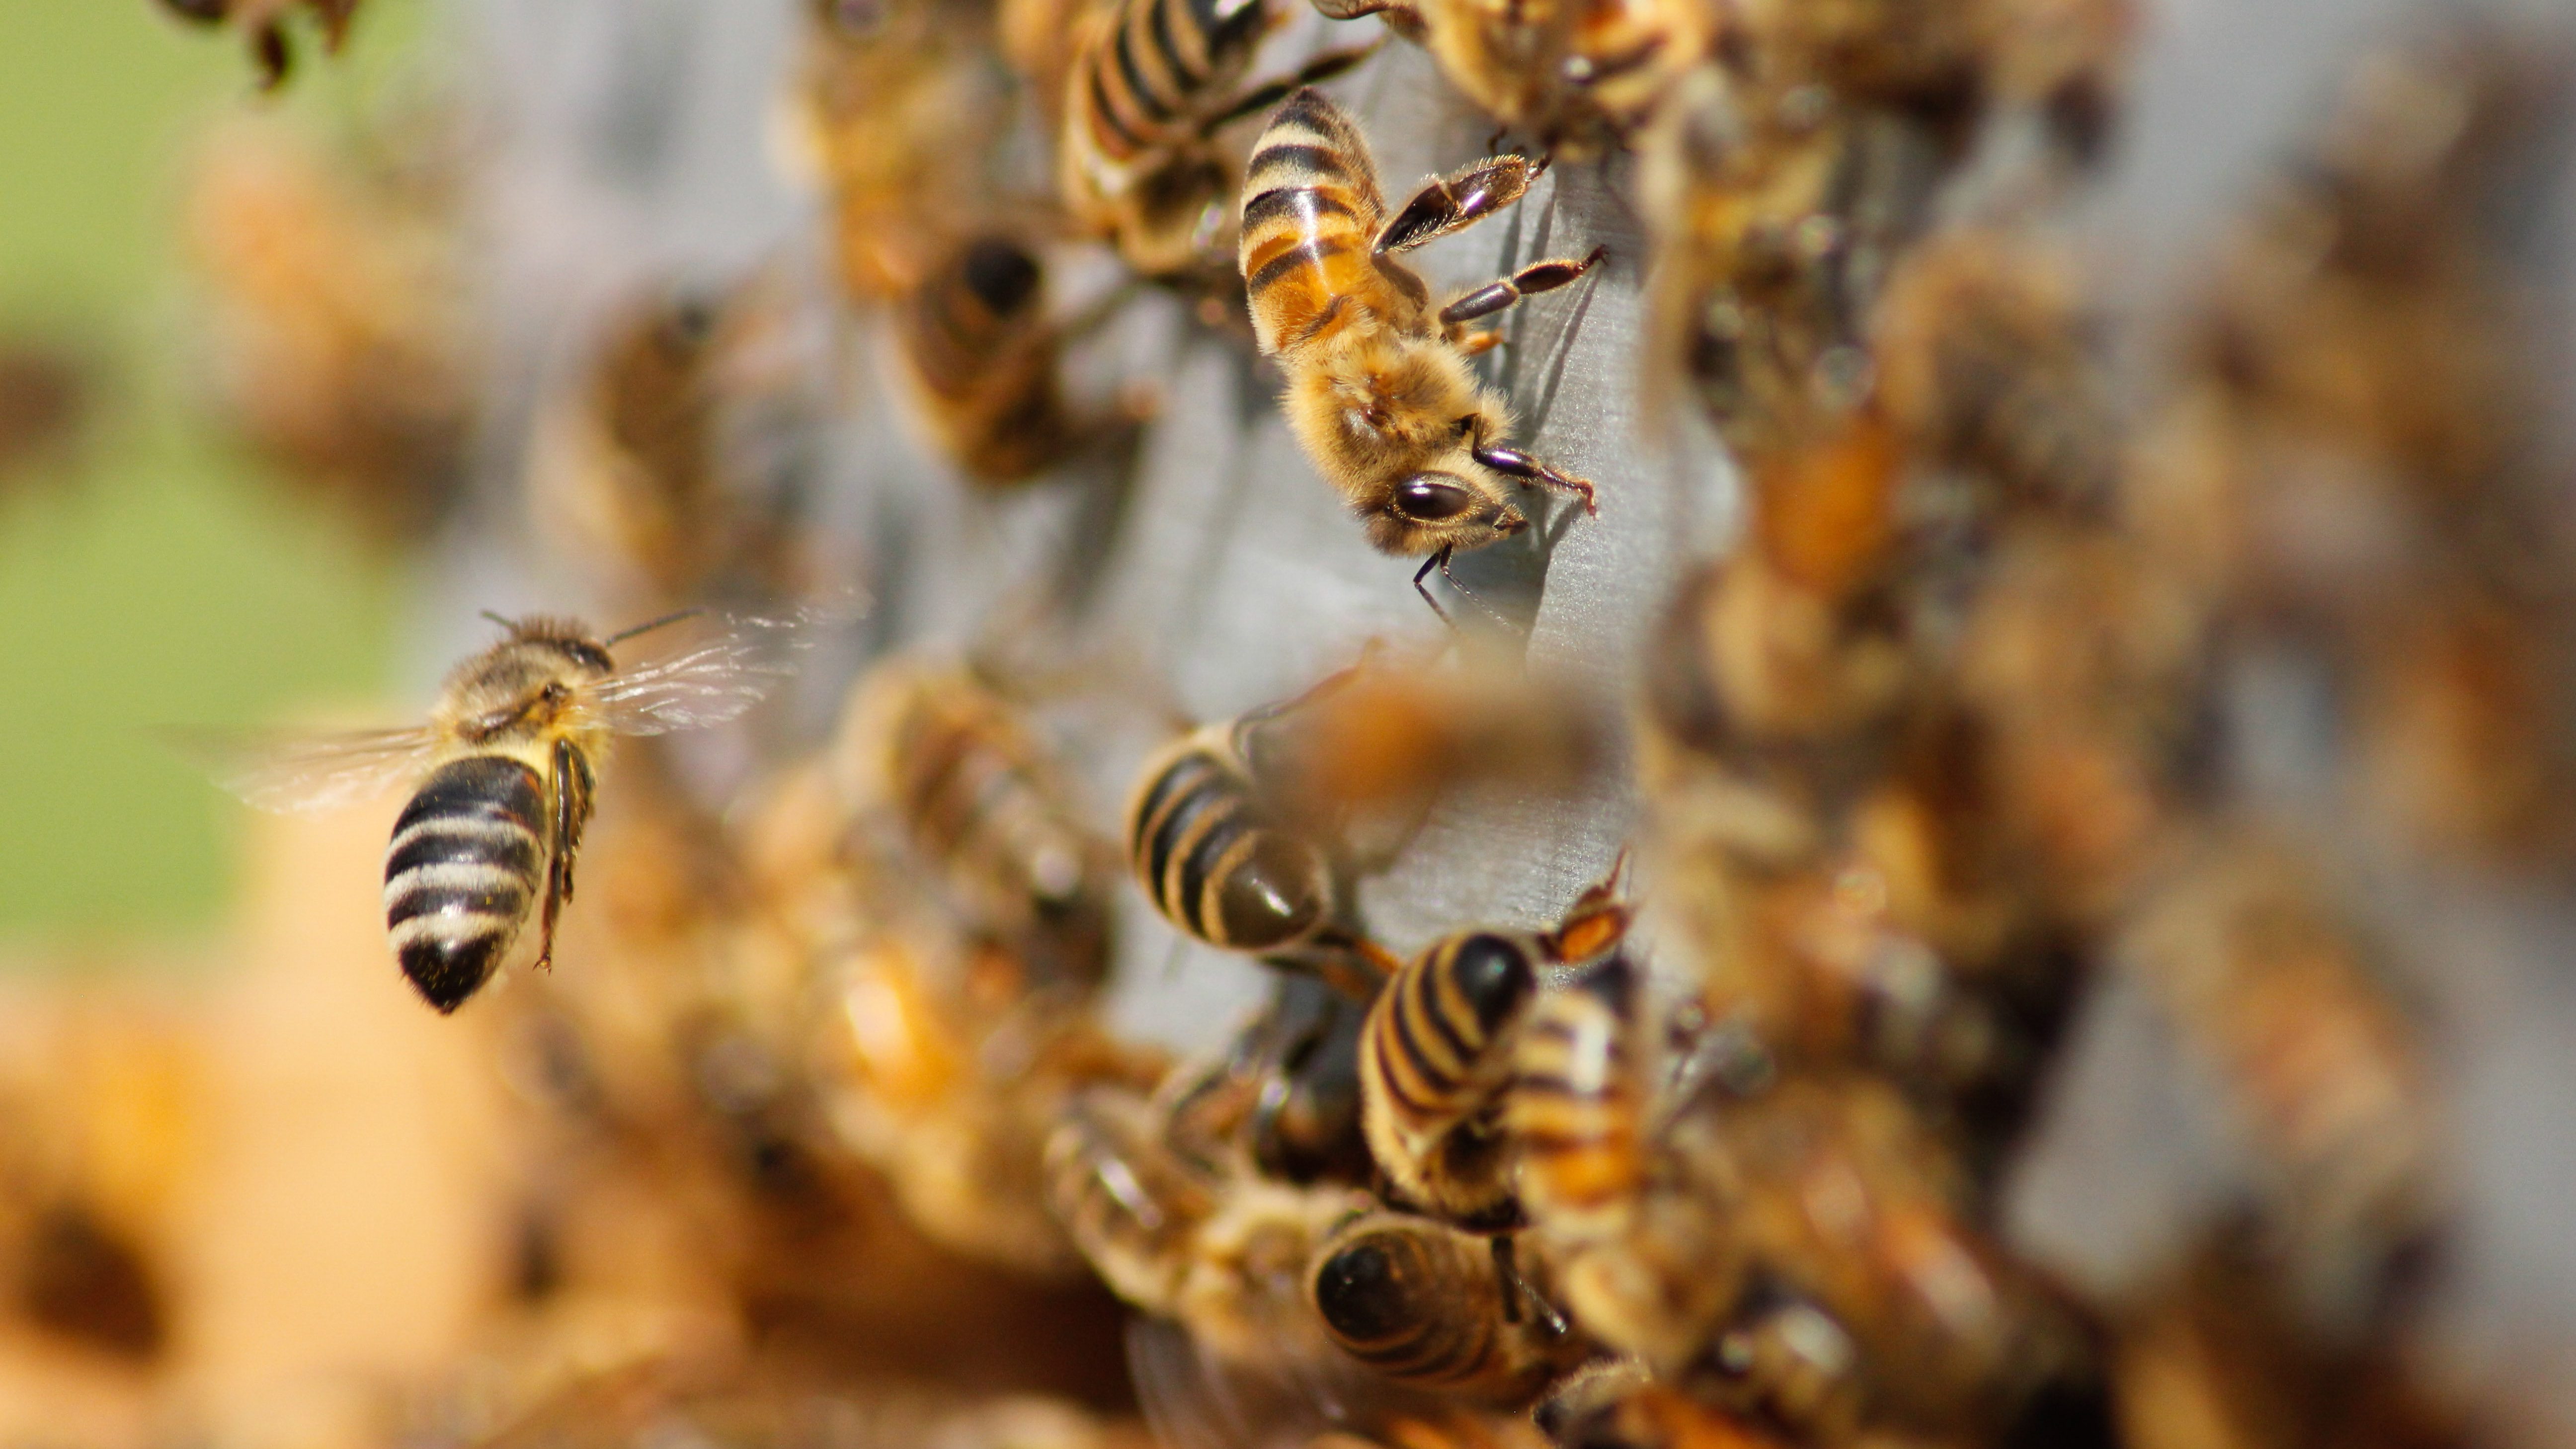 Miel de abejas nativas sin aguijón para consumo y uso medicinal | El ...